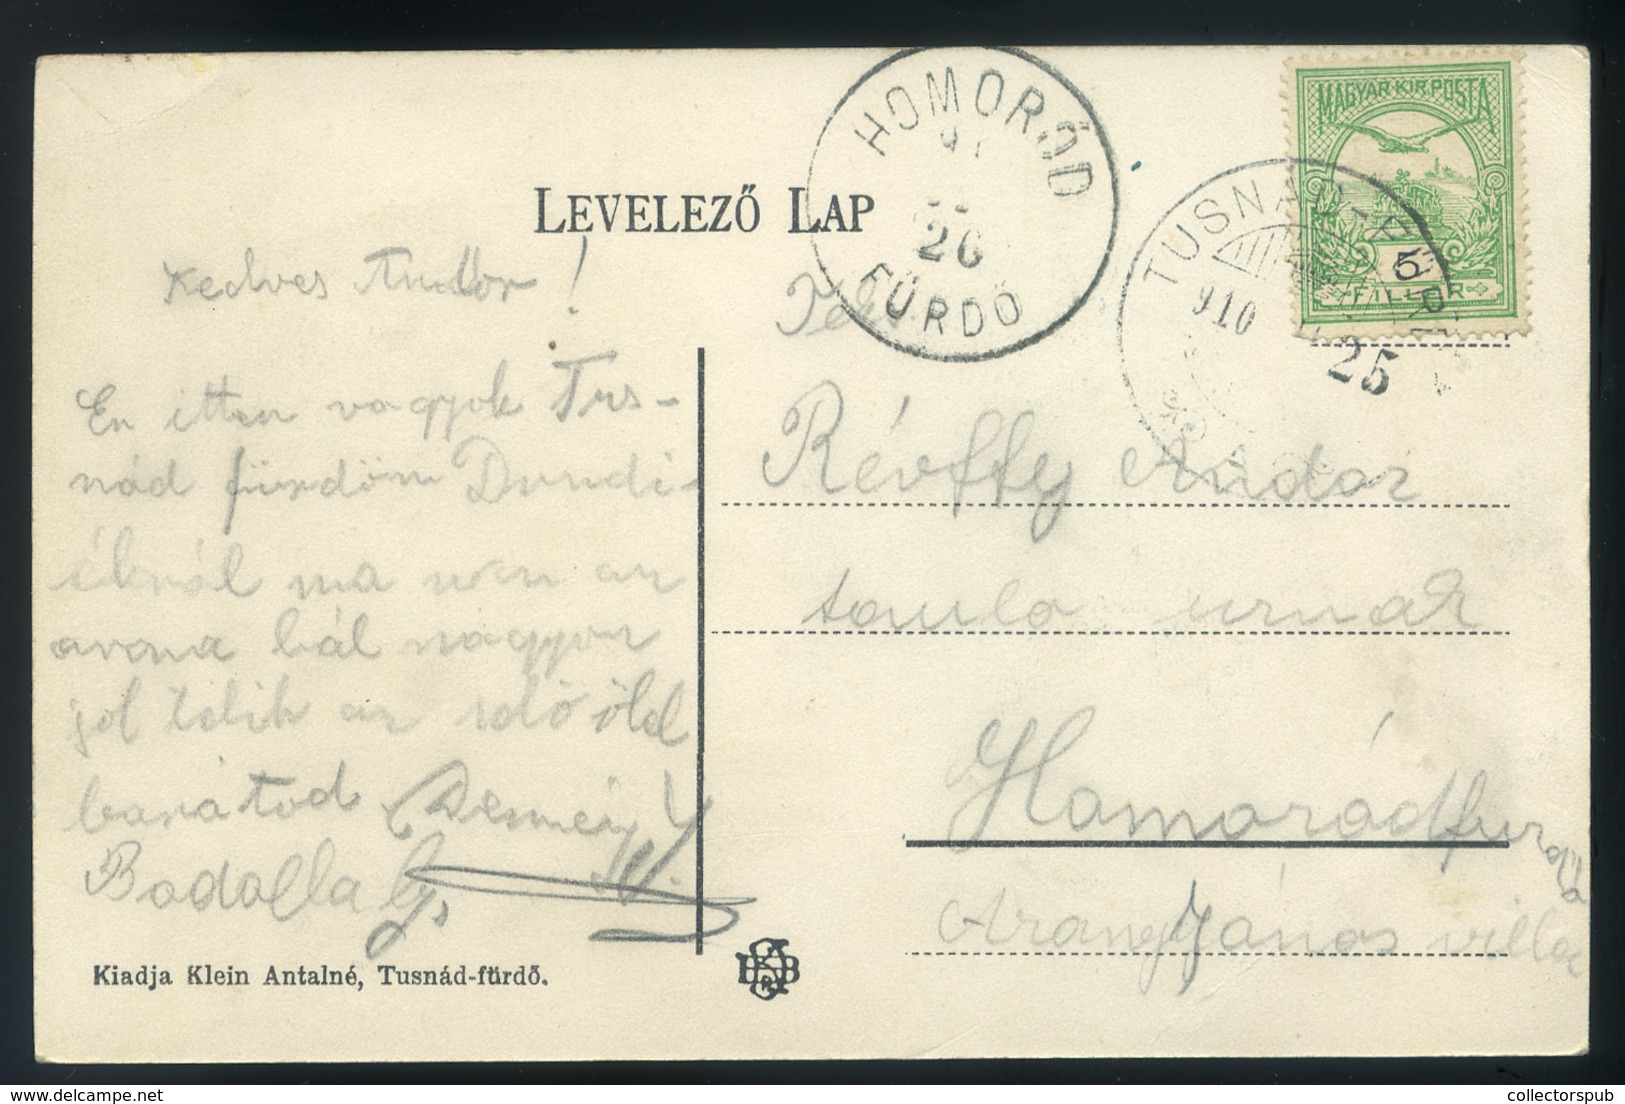 TUSNÁDFÜRDŐ 1910. Art Nouveu , Lepkés Képeslap / TUSNÁDFÜRDŐ 1910 Art Nouveau Butterfly Postcard - Hungría